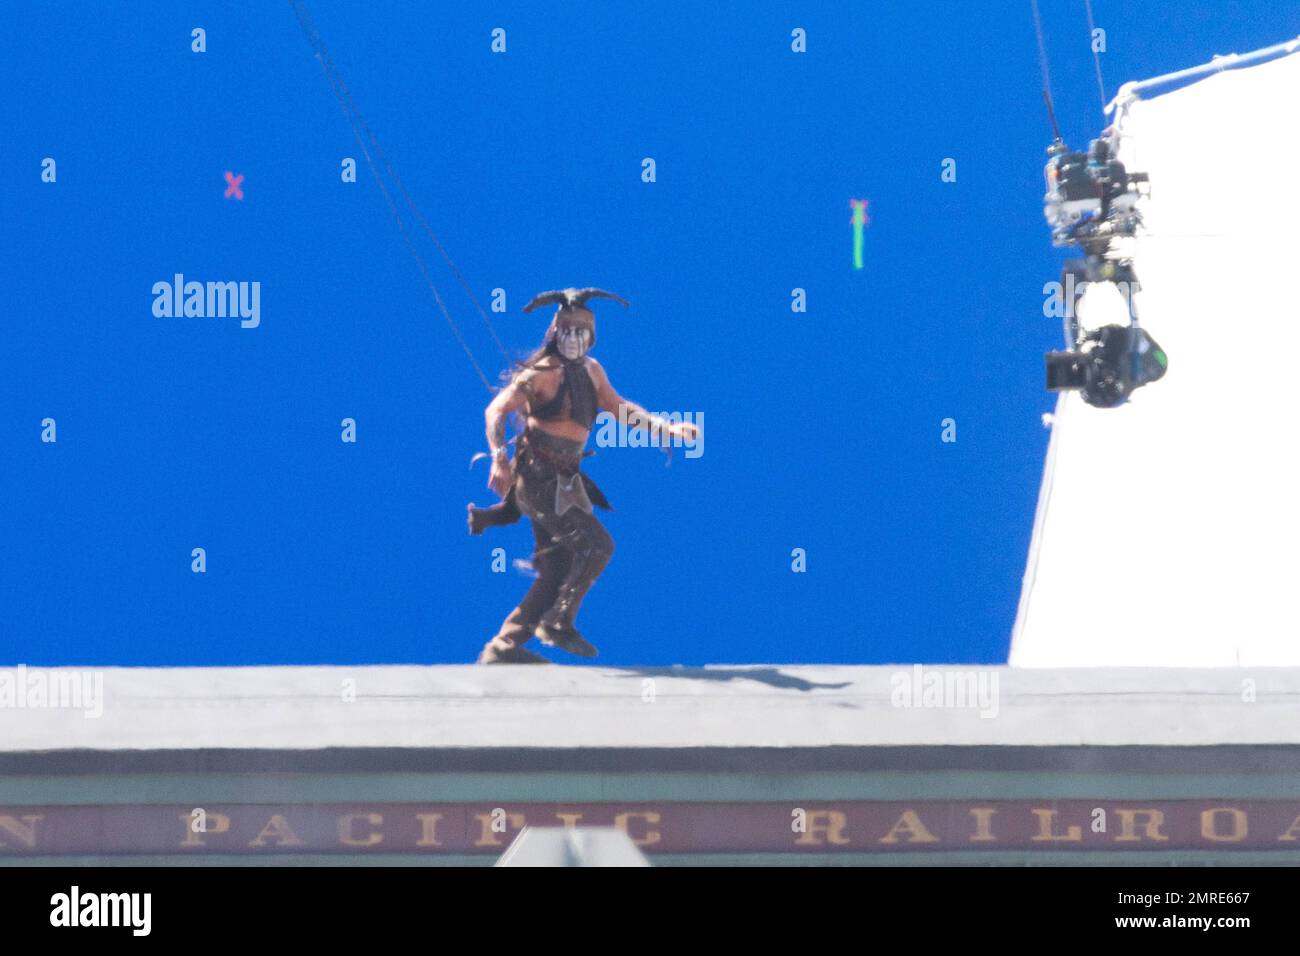 In voller Kostüm als Tonto verkleidet dreht Johnny Depp eine Stuntszene für seinen kommenden Film „The Lone Ranger“, in dem der indianische Geisterkrieger Tonto die unzähligen Geschichten erzählt, die John Reid, einen Mann des Gesetzes, in eine Legende der Gerechtigkeit verwandelten. Der Film wird am 3. Juli 2013 veröffentlicht. Los Angeles, Kalifornien. 19. September 2012 Stockfoto